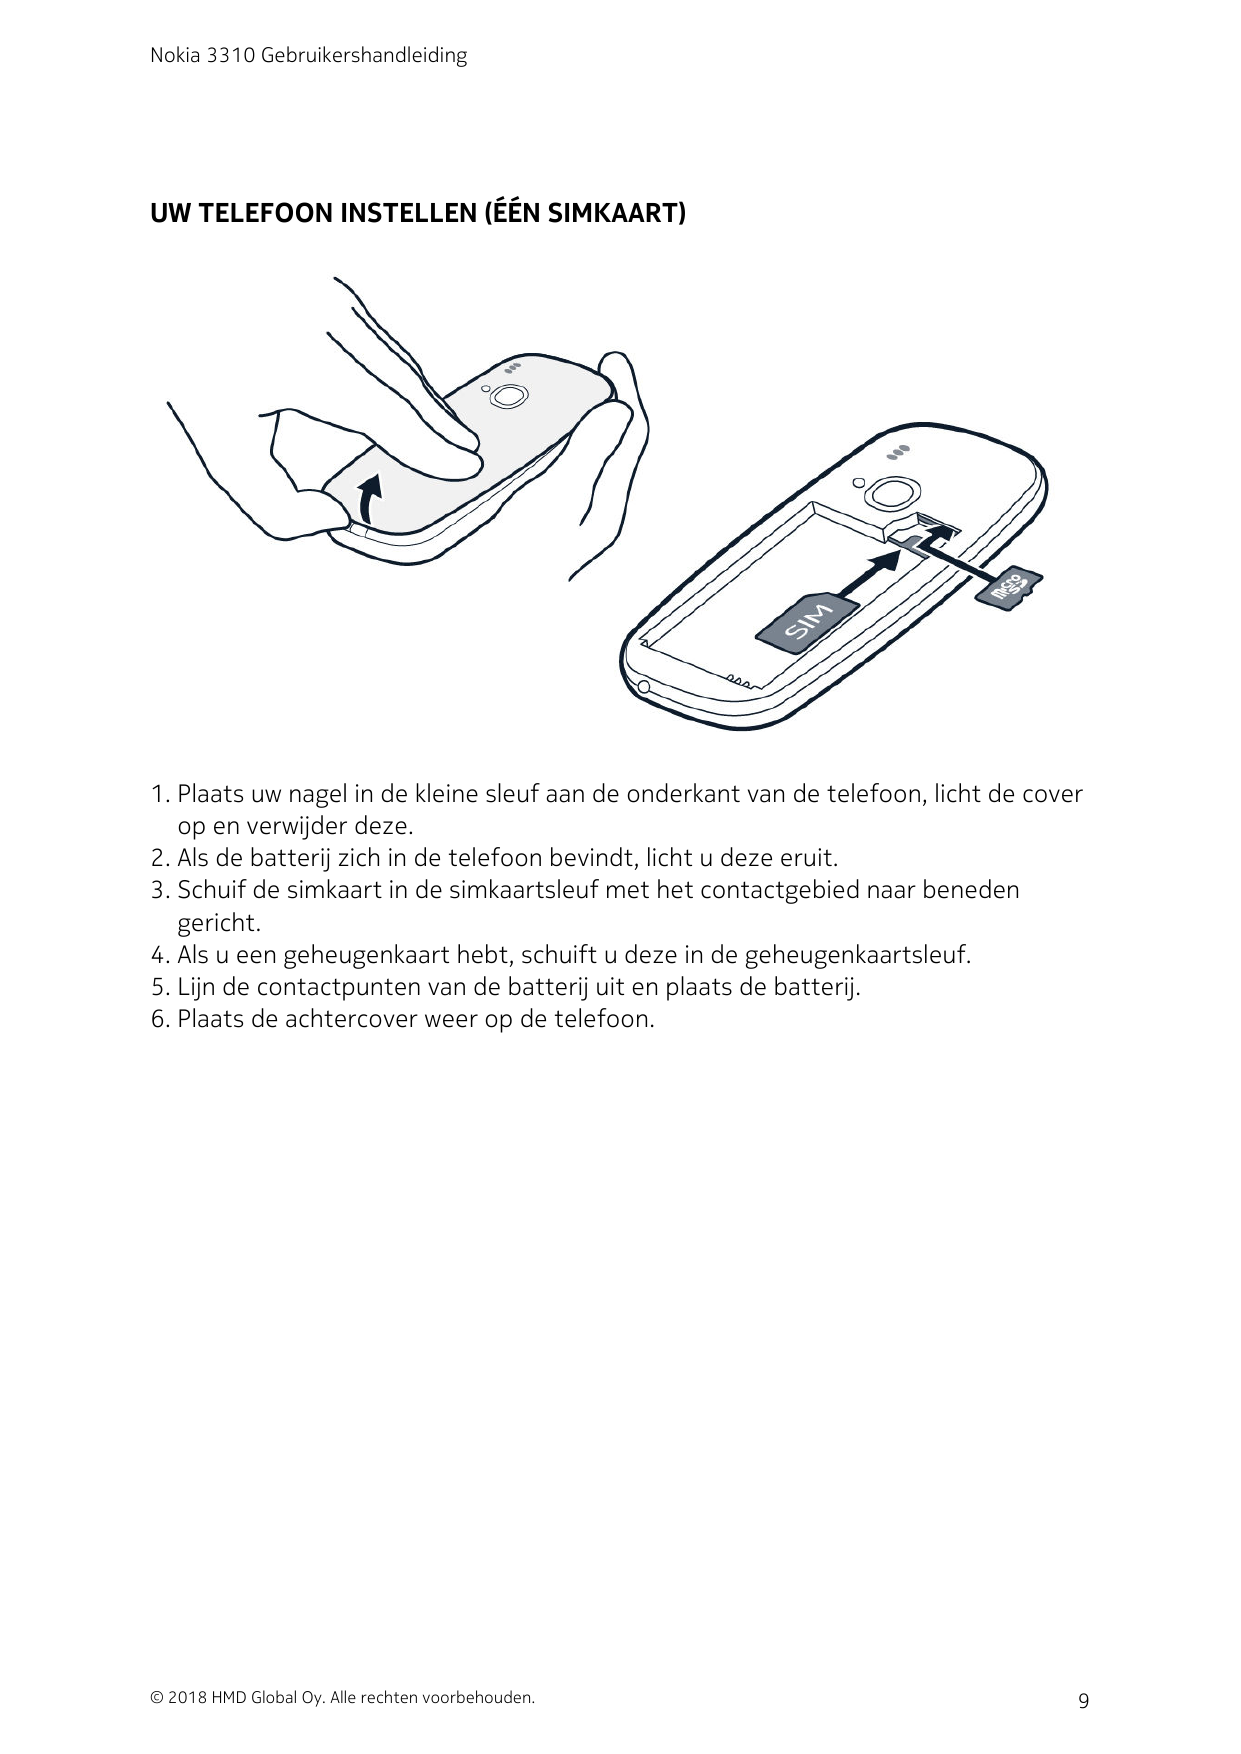 Nokia 3310 GebruikershandleidingUW TELEFOON INSTELLEN (ÉÉN SIMKAART)1. Plaats uw nagel in de kleine sleuf aan de onderkant van d